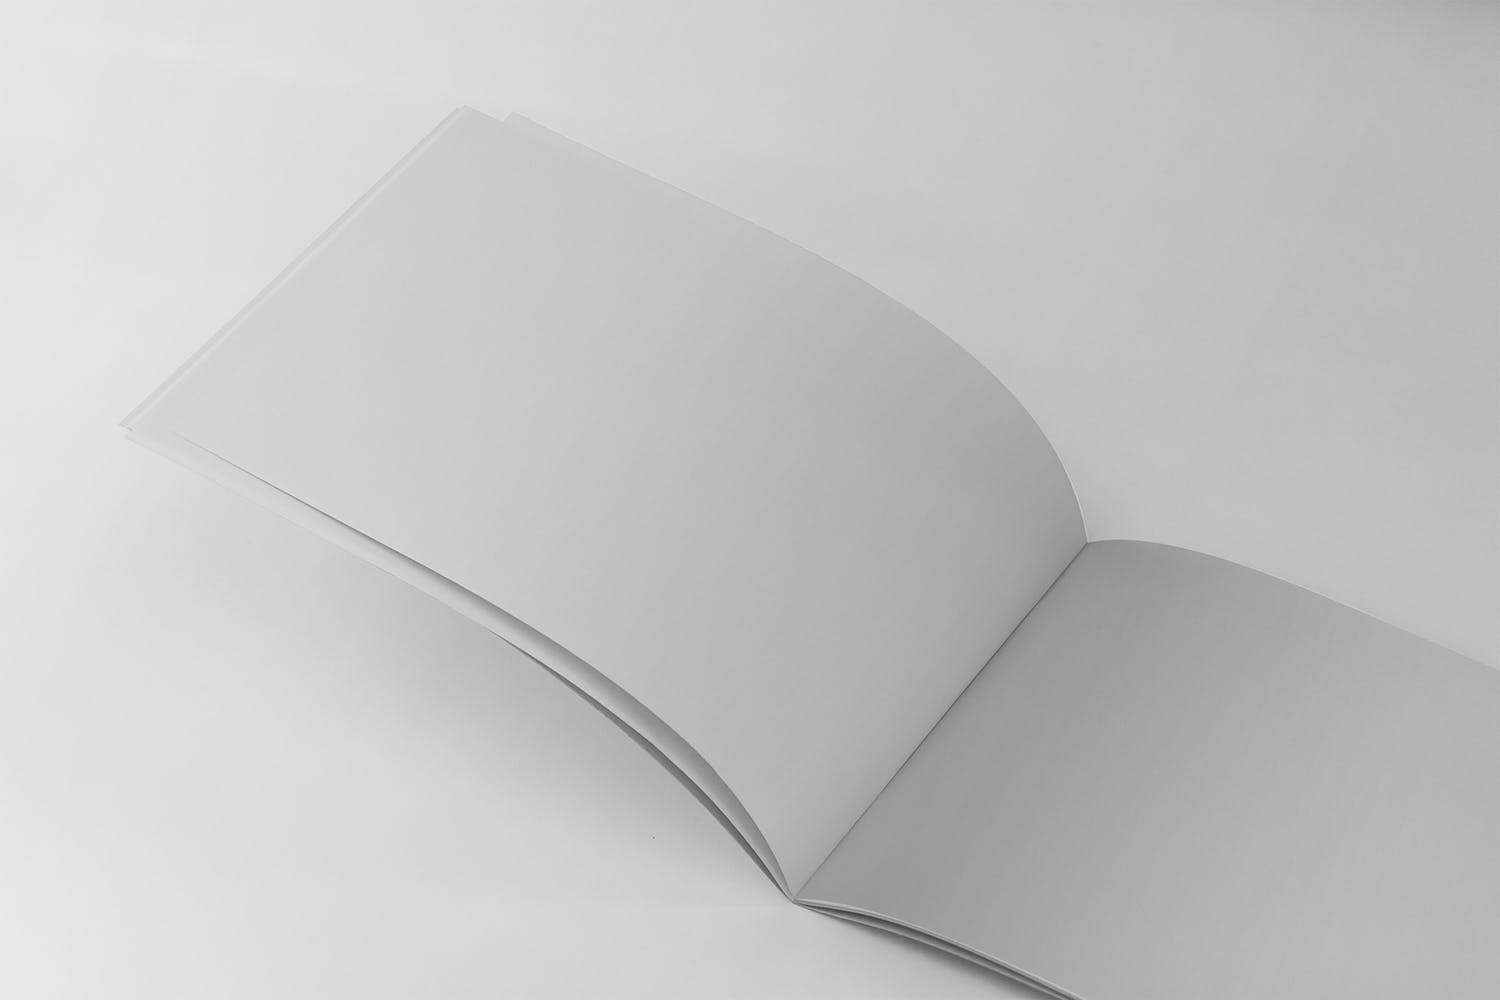 横版设计企业&品牌宣传册左侧特写图样机第一素材精选模板 US Half Letter Brochure Mockup Closeup Left Page插图(1)